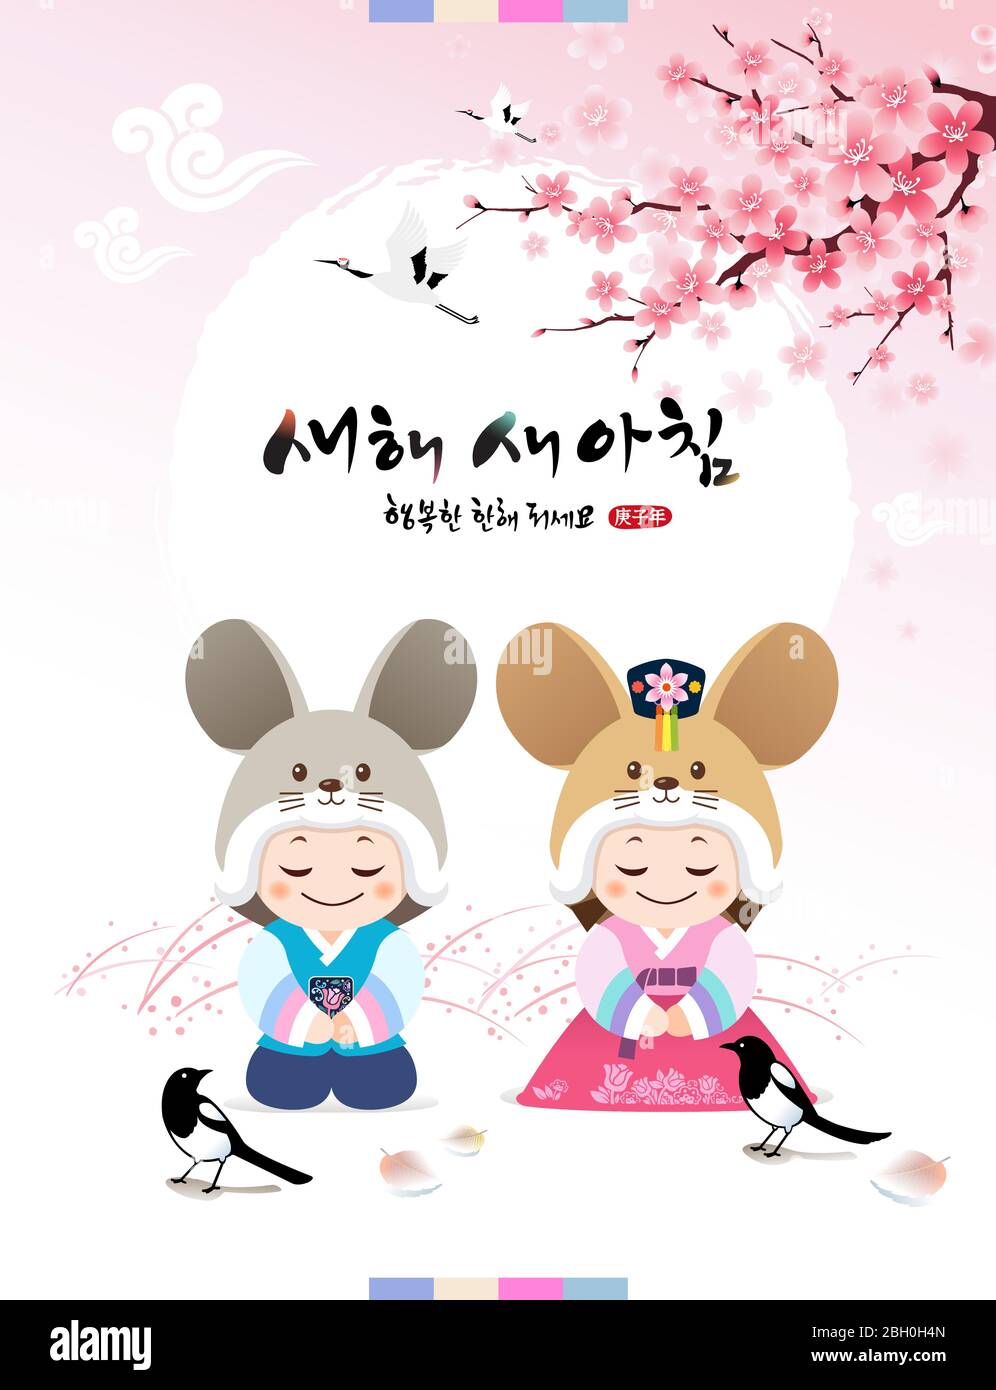 Koreanisches Neujahr. Neujahrs Grüße von Kindern mit traditionellen hanbok und Maus Charakter Hüte. Frohes neues Jahr, koreanische Übersetzung. Stock Vektor